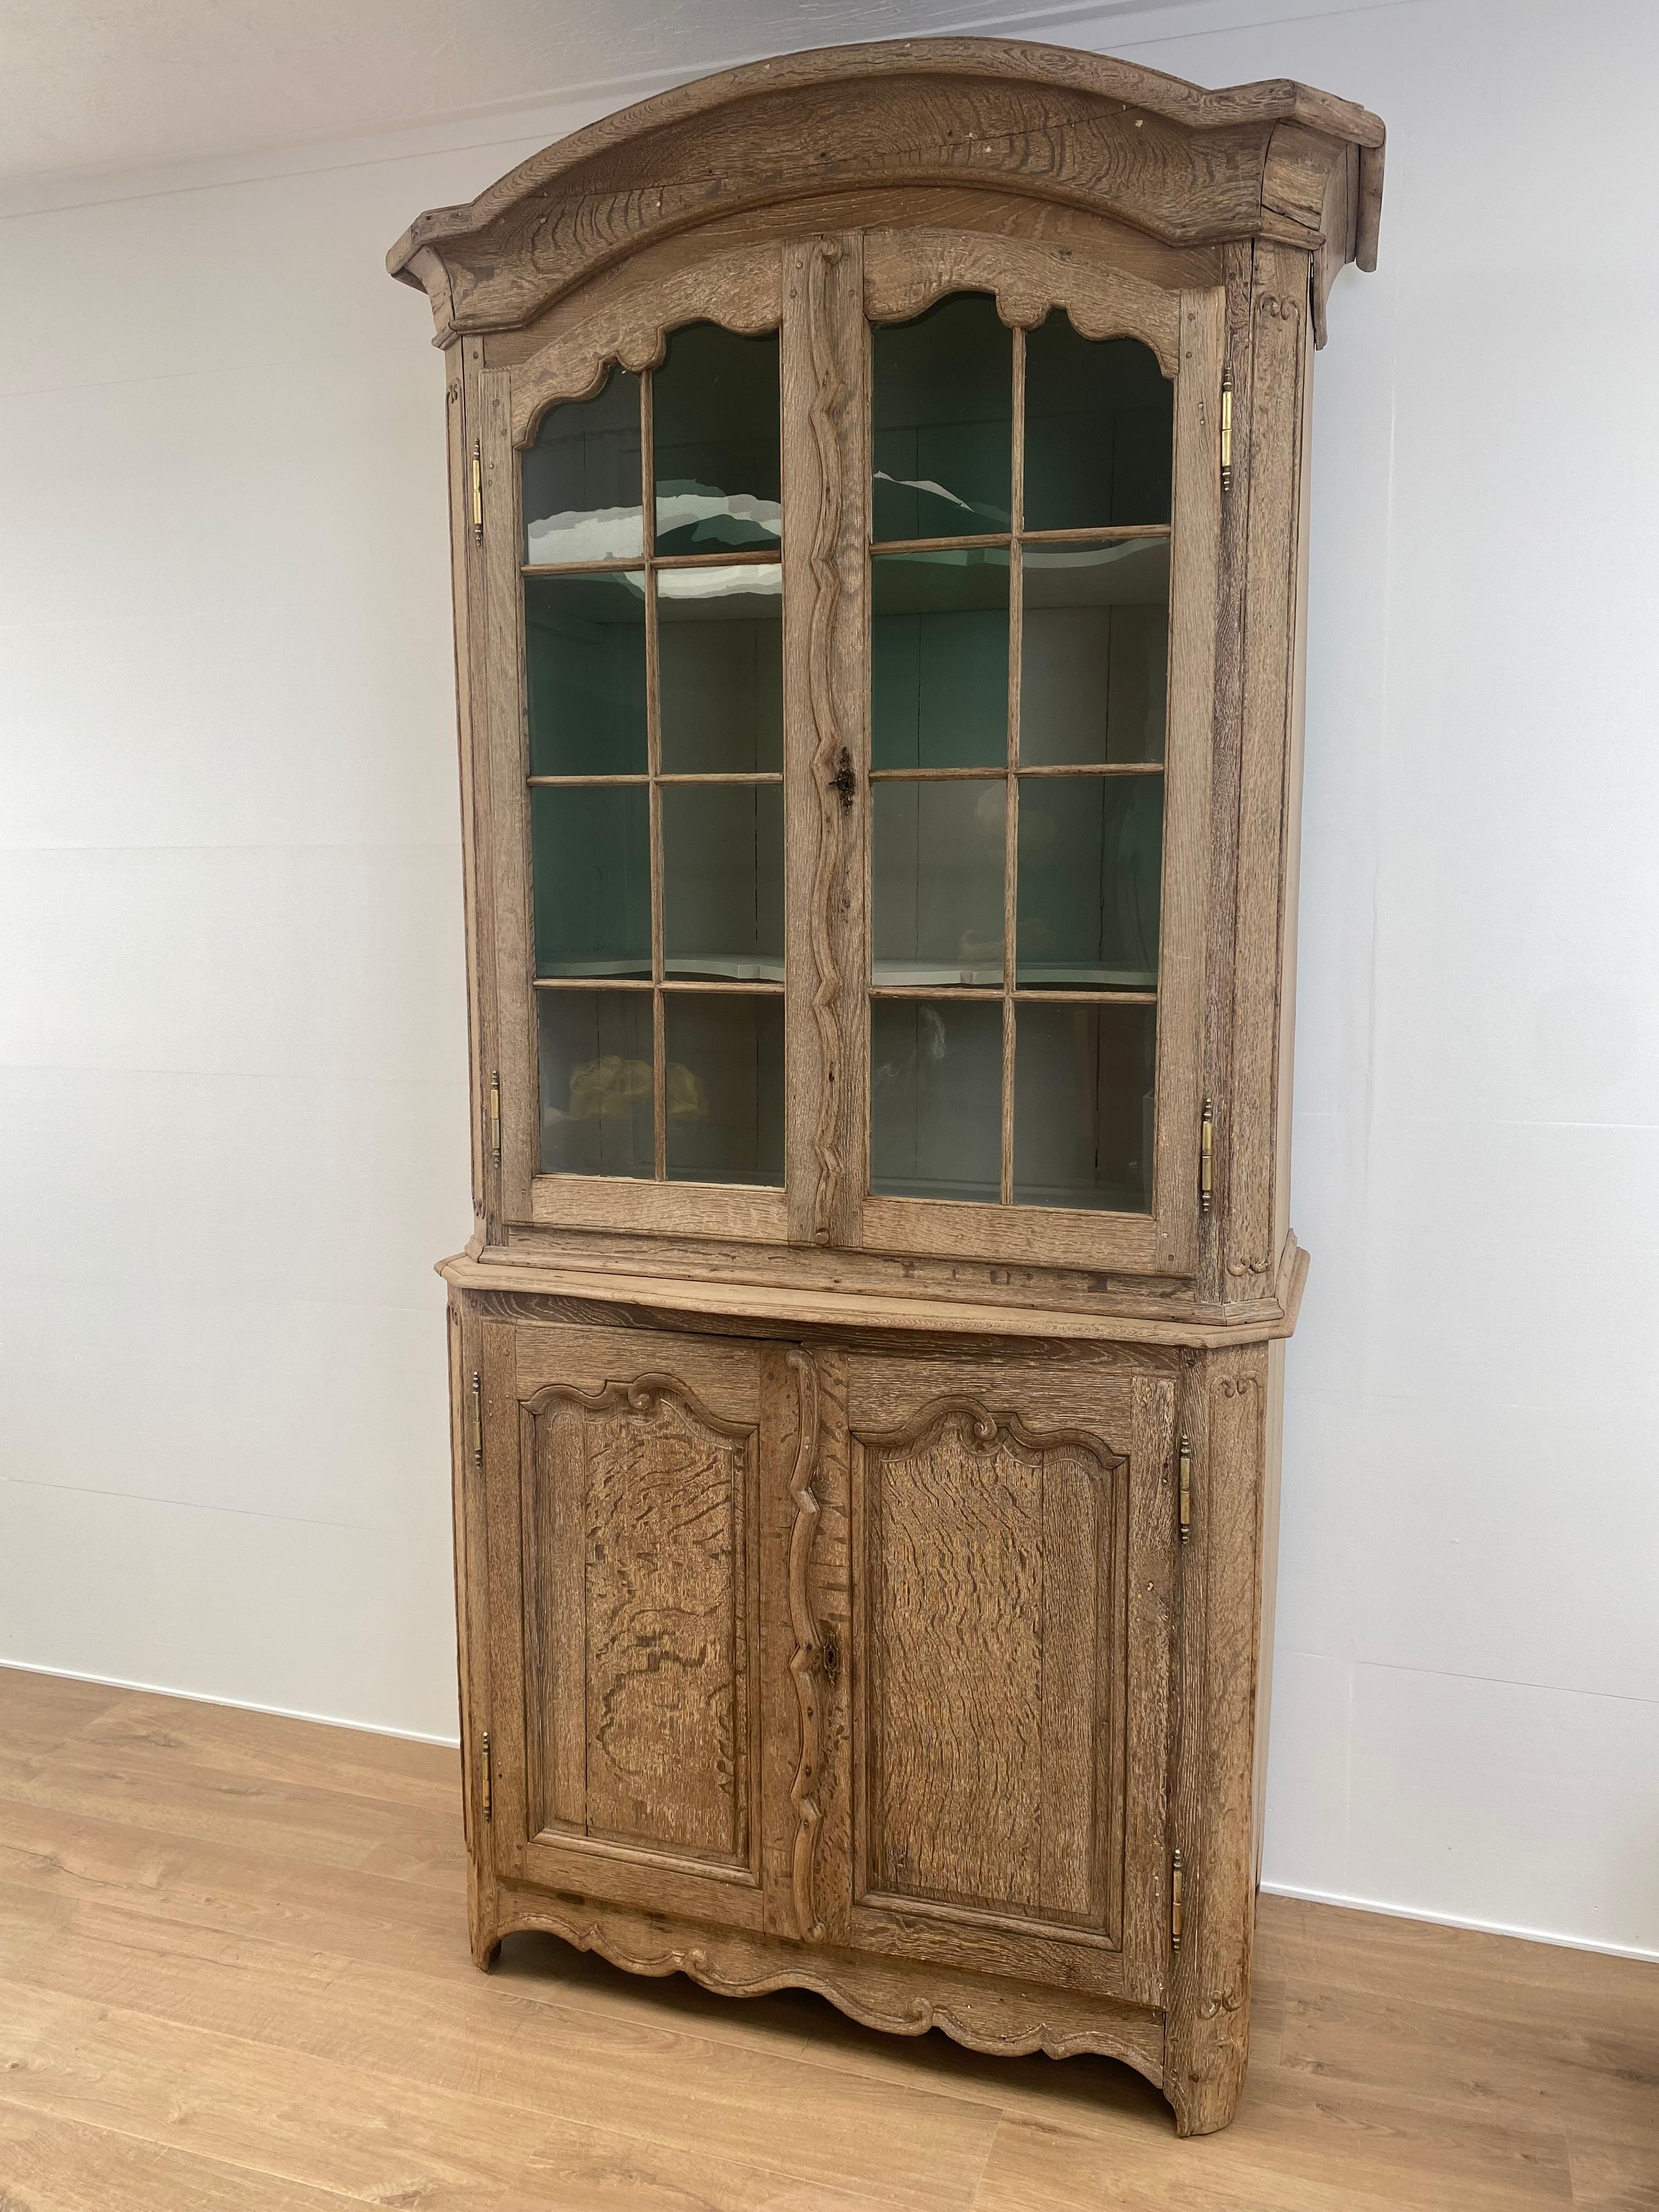 Une belle vitrine flamande ancienne entièrement originale provenant des Flandres,
Chêne blanchi avec verre d'origine,
bel intérieur peint,
idéal à placer dans votre cuisine ou votre salle à manger.
 